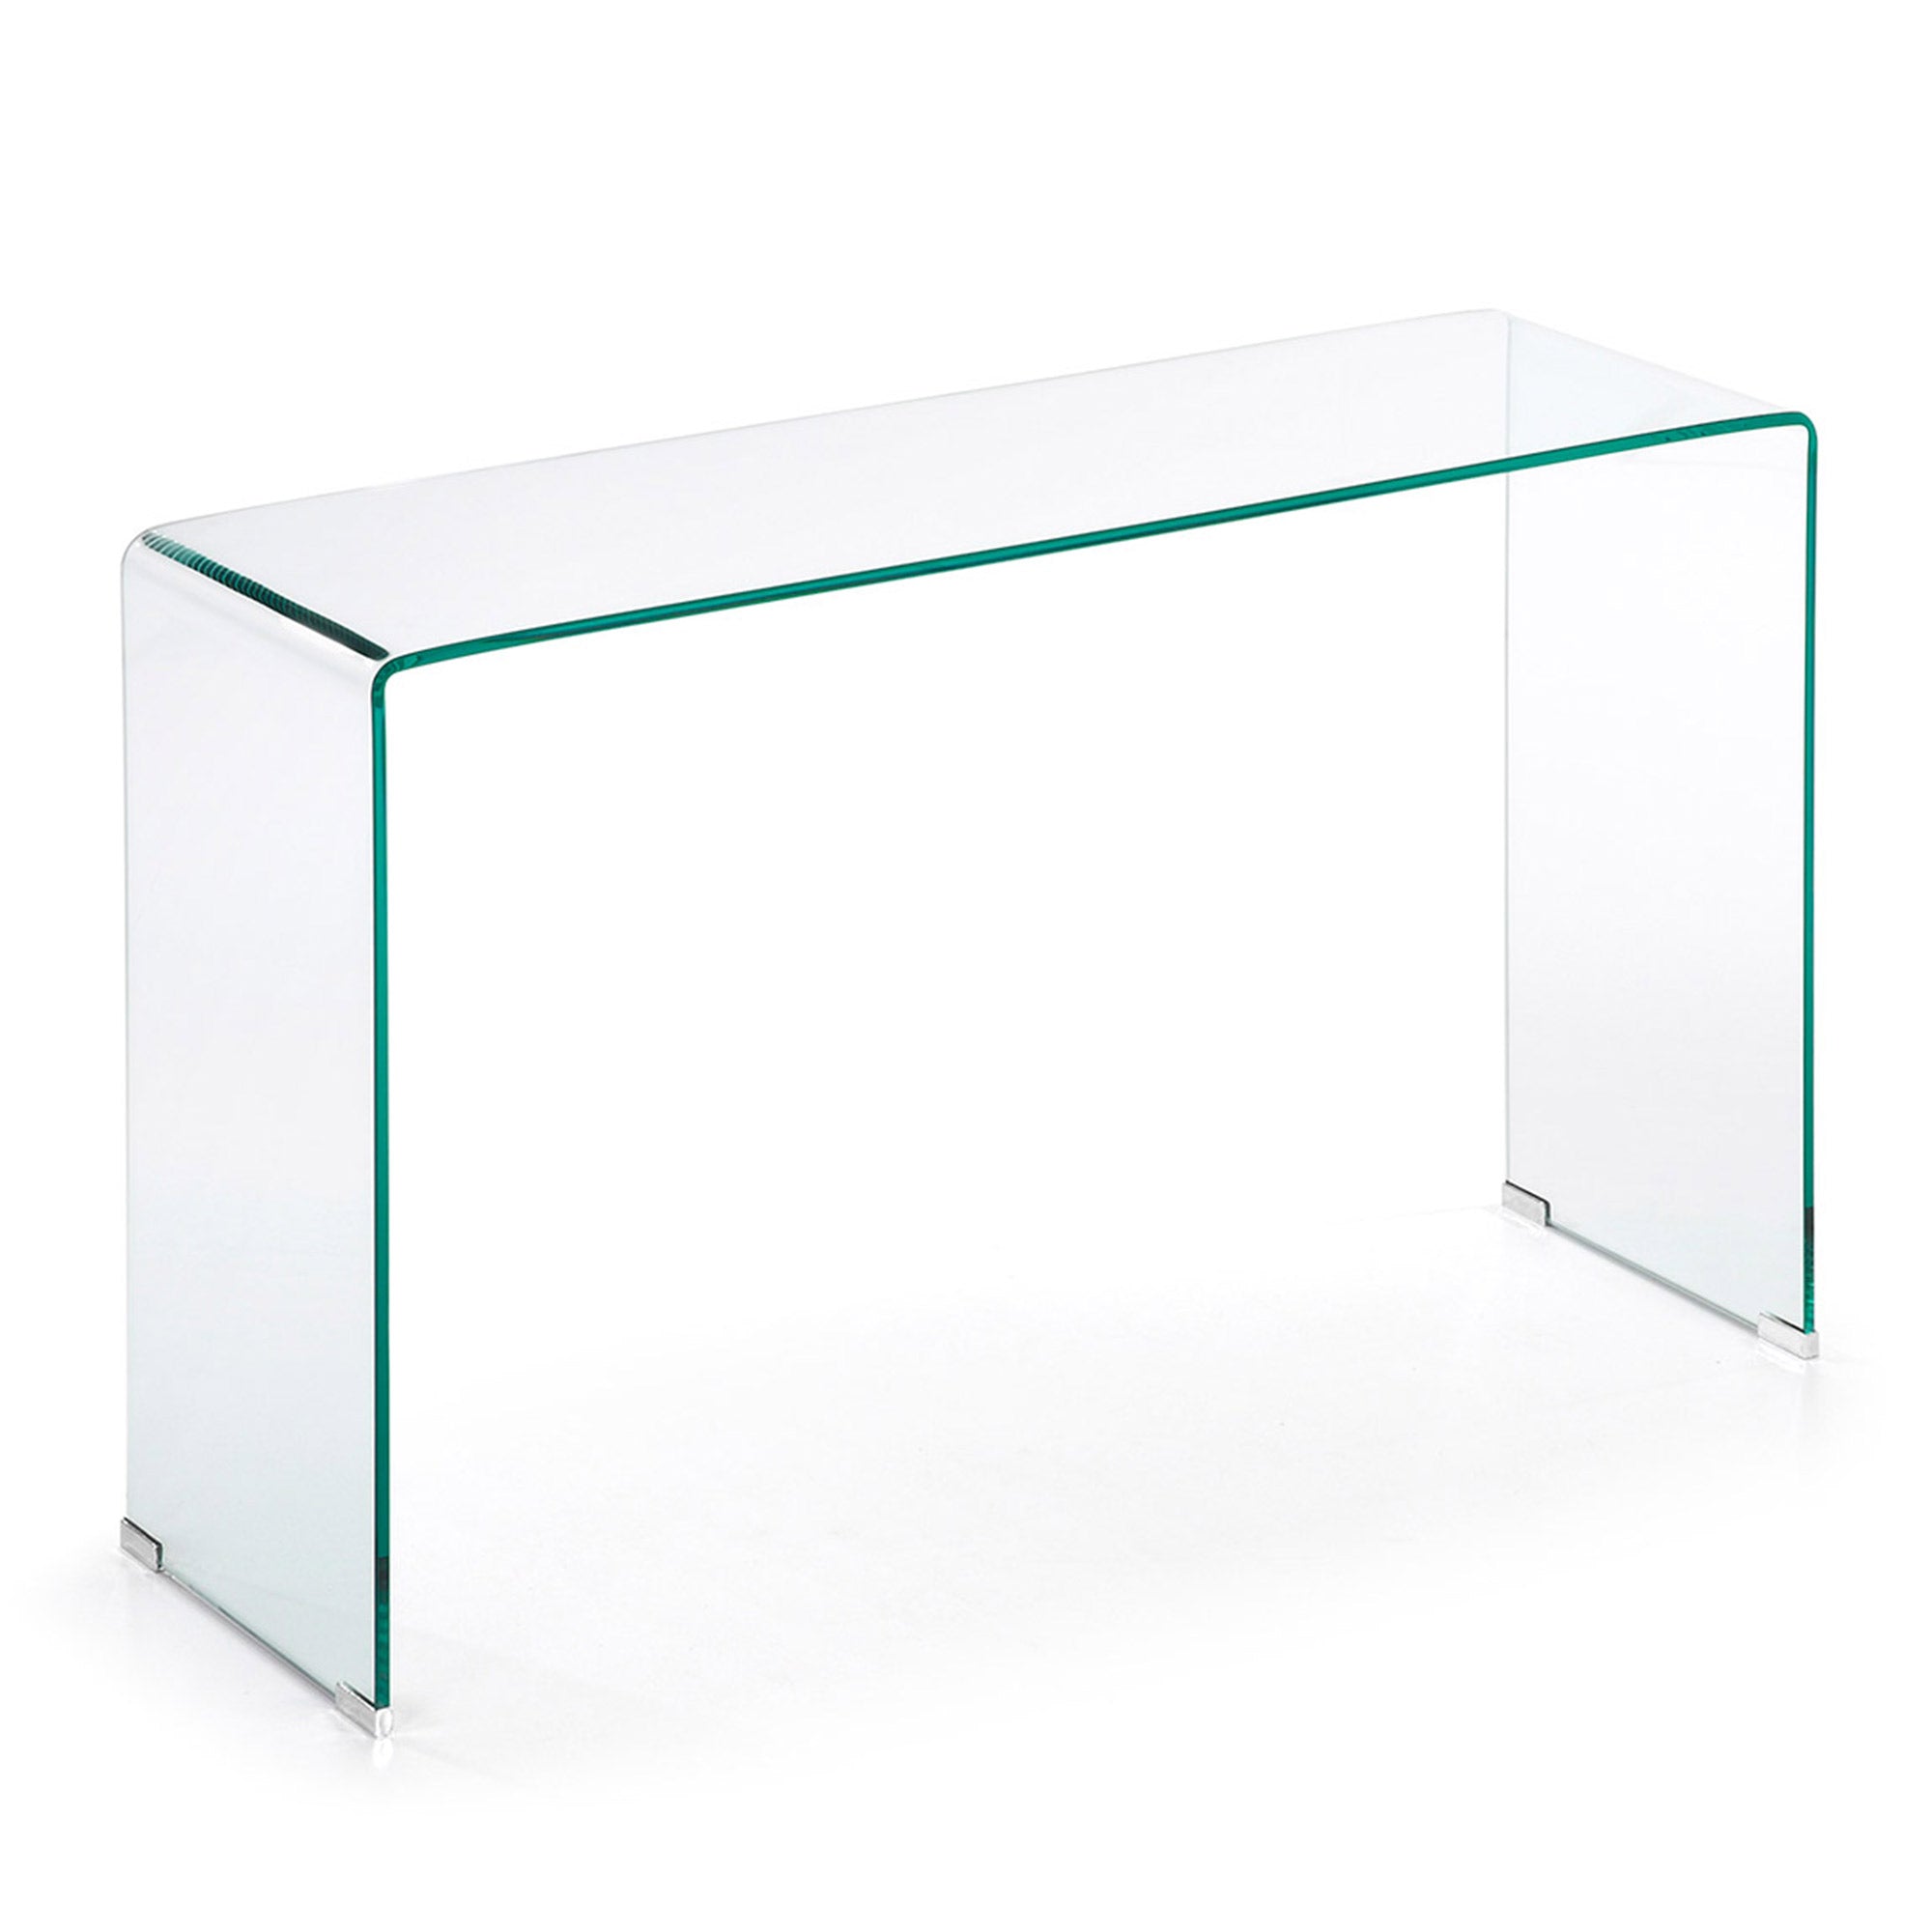 Burano glass console table 125 x 78 cm